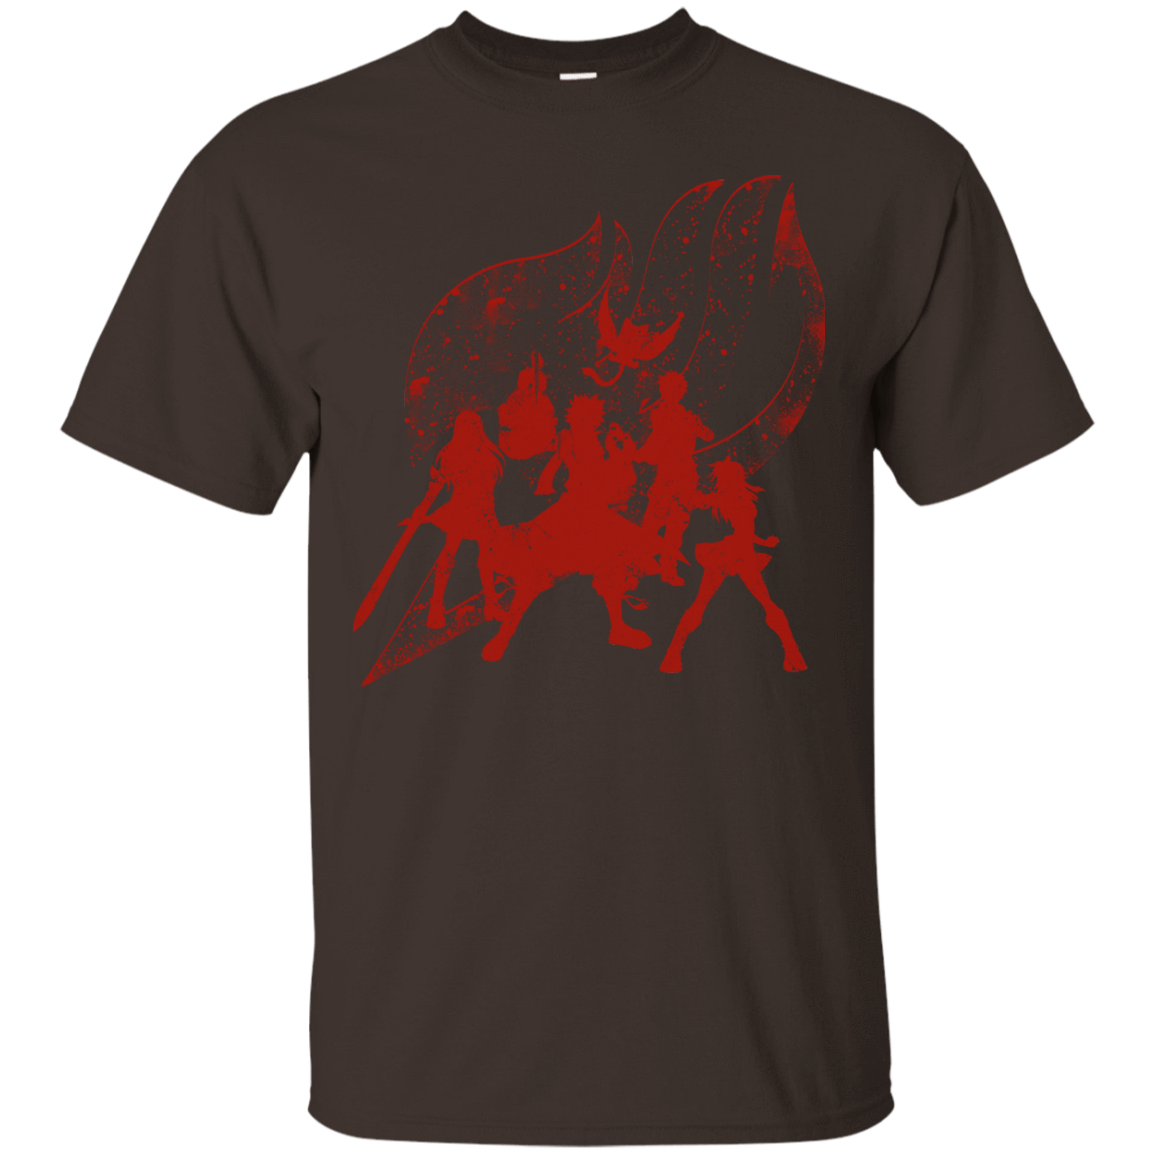 T-Shirts Dark Chocolate / S Power Guild T-Shirt